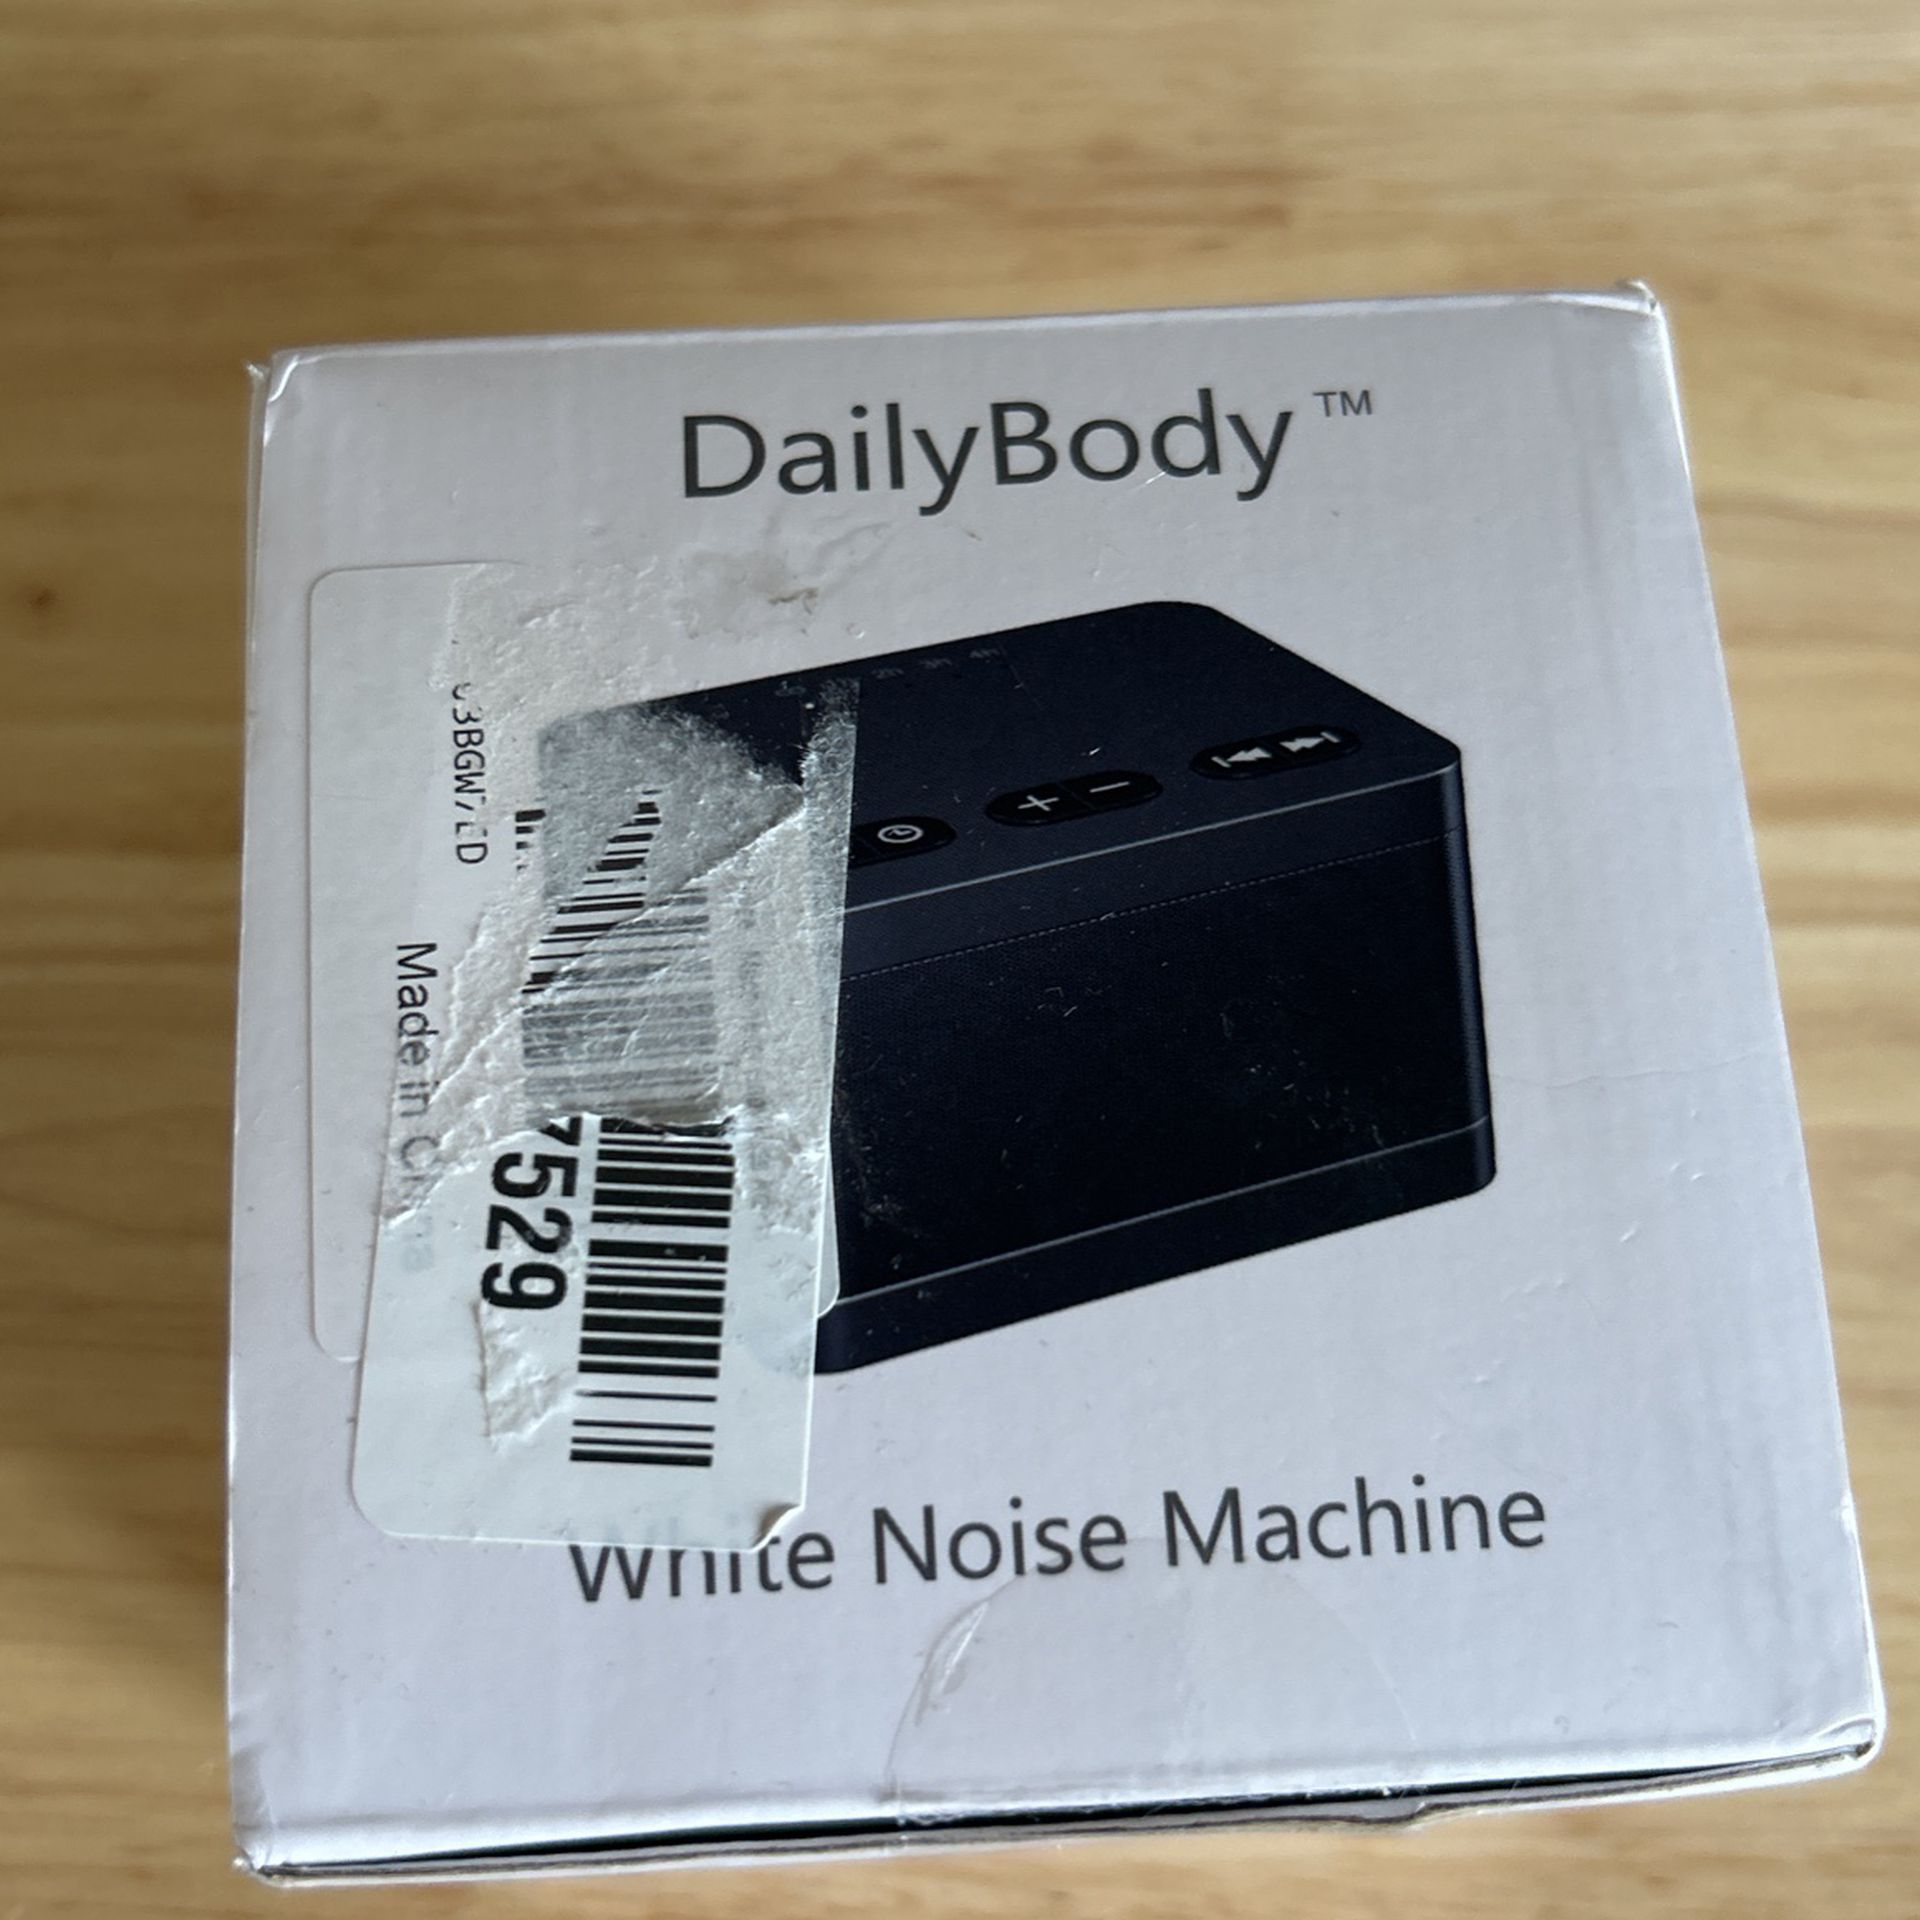 White noise machine